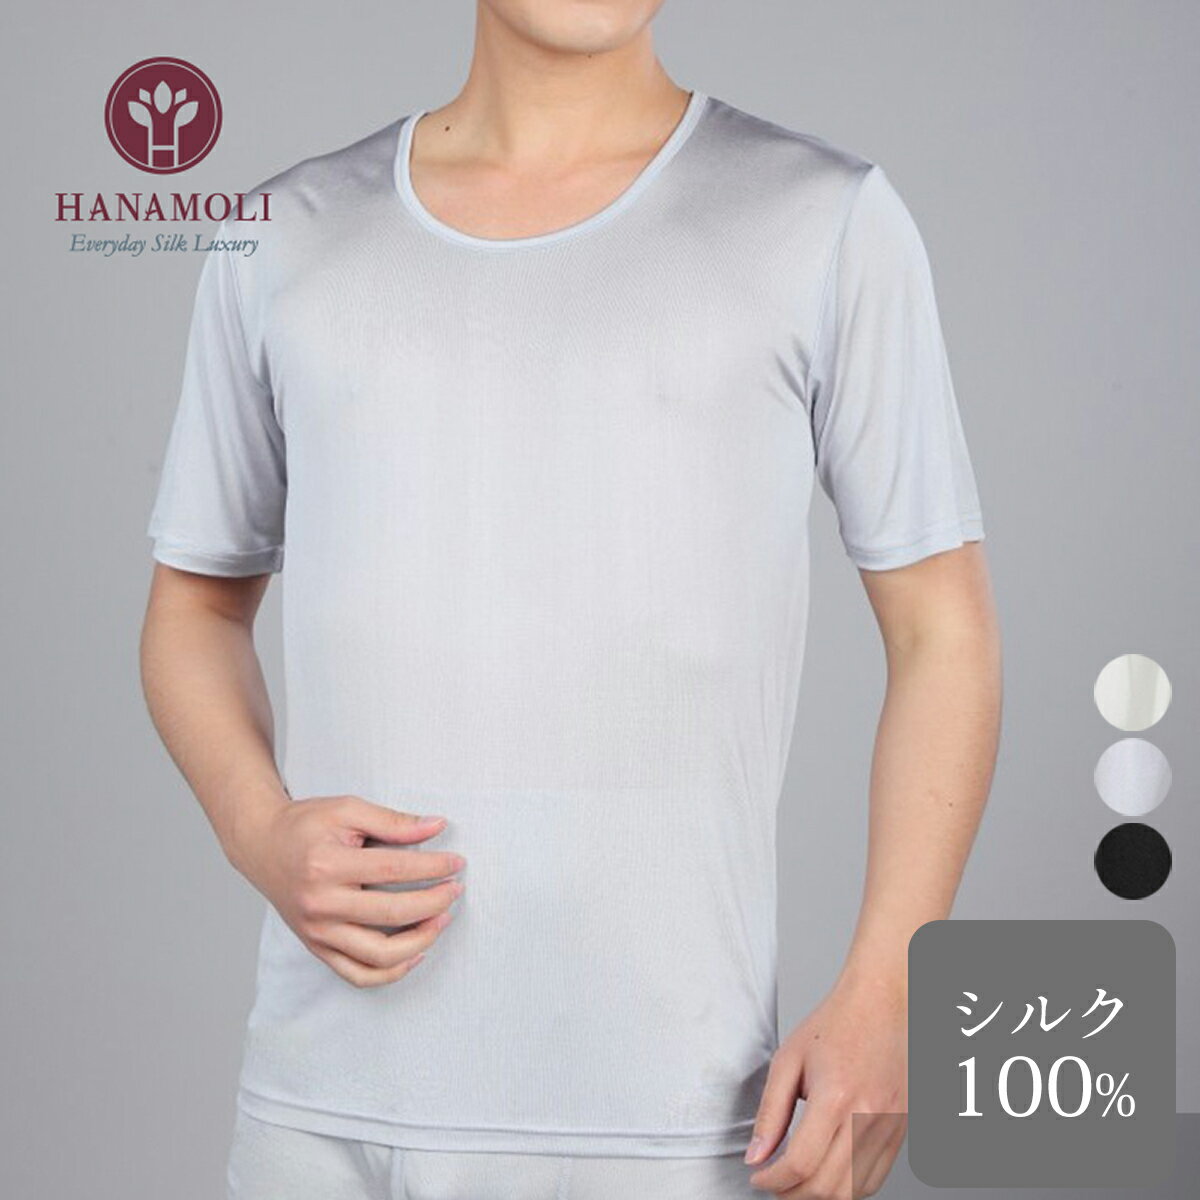 ◇シルク100% メンズ半袖シャツ 敏感肌 低刺激 男性用